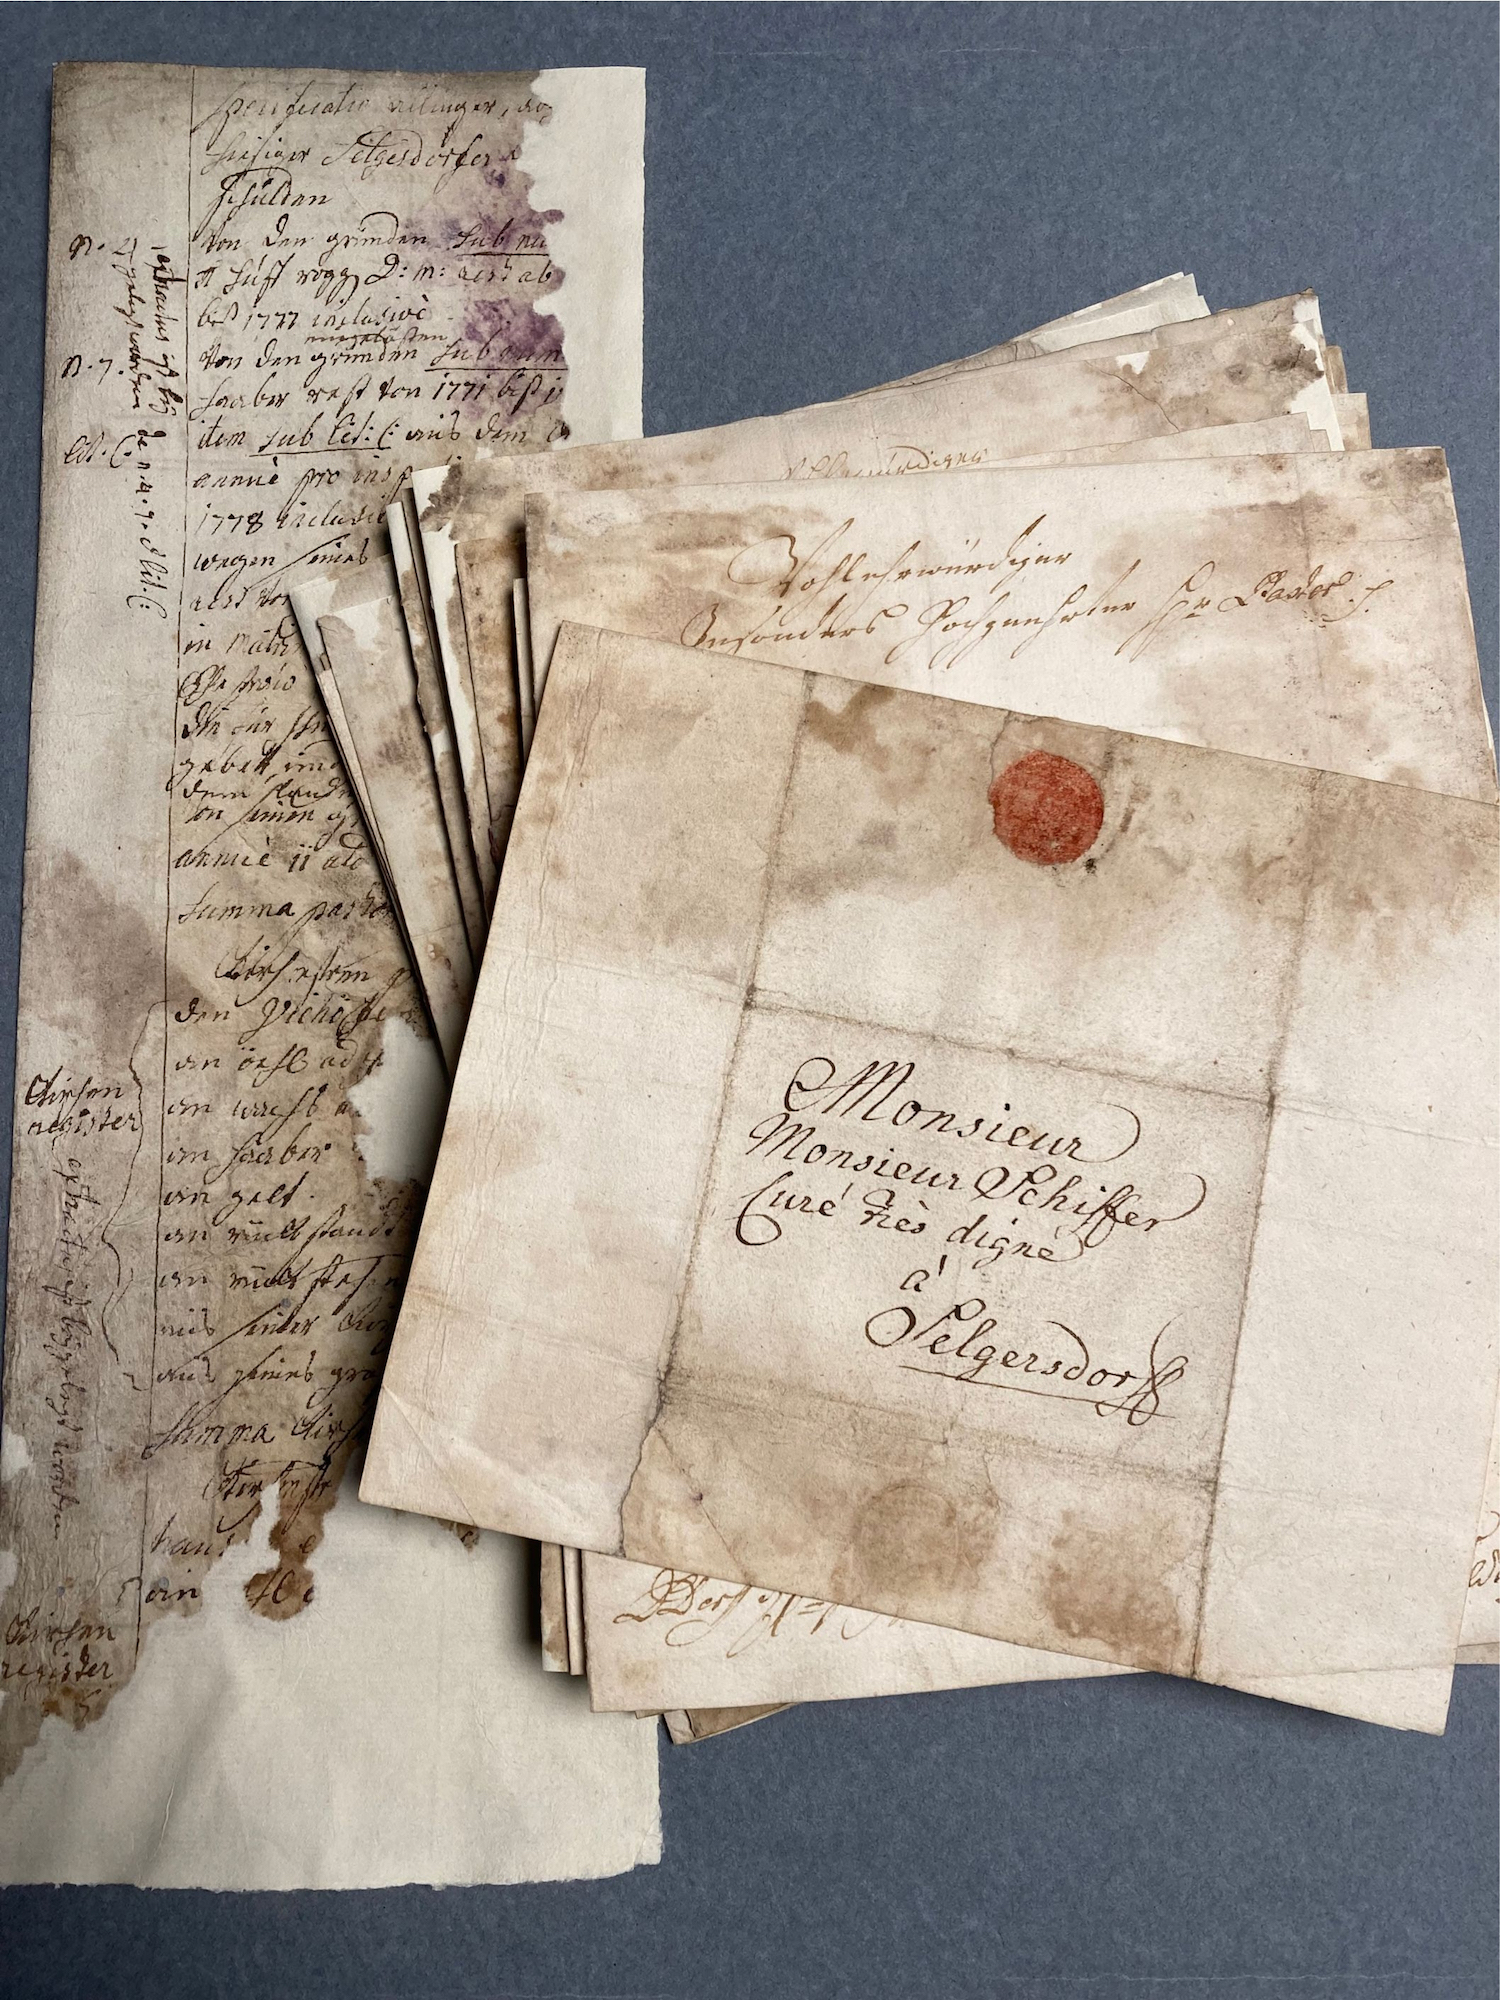 Korrespondenz gehörte ebenfalls zu den Archivalien, die aufbereitet und katalogisiert wurden. (c) Bistum Aachen/Anja Klingbeil